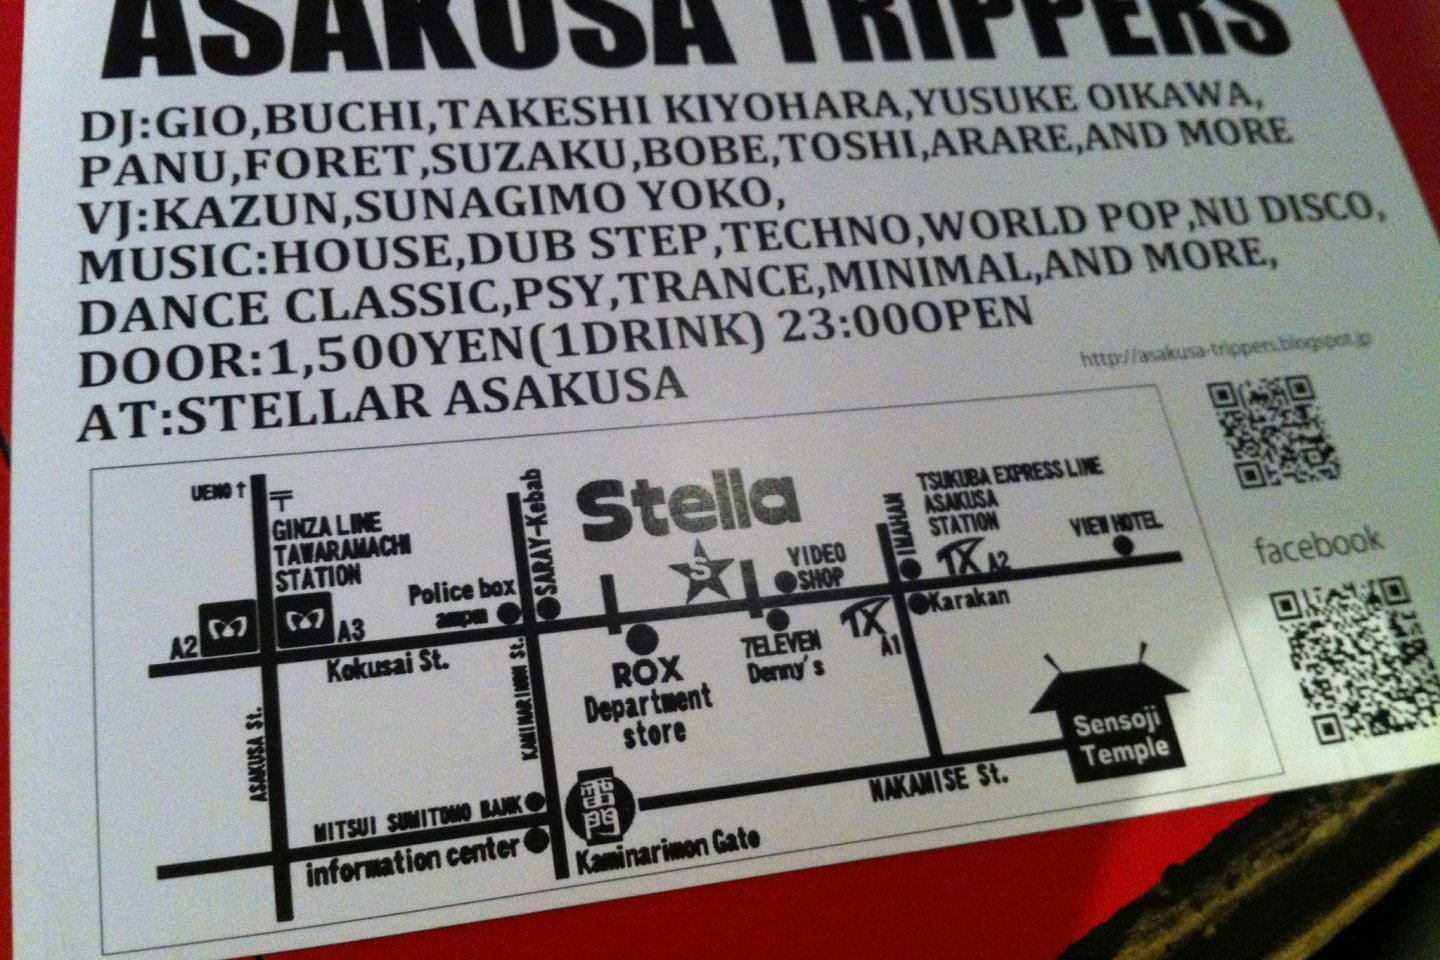 ASAKUSA TRIPPERS ปาร์ตี้นี้มีจัดทุกเดือนที่ร้าน STELLA Asakusa ค่ะ พี่เจ้าของร้านเป็นลูกครึ่งไทย-ญี่ปุ่น ใจดีมากๆ